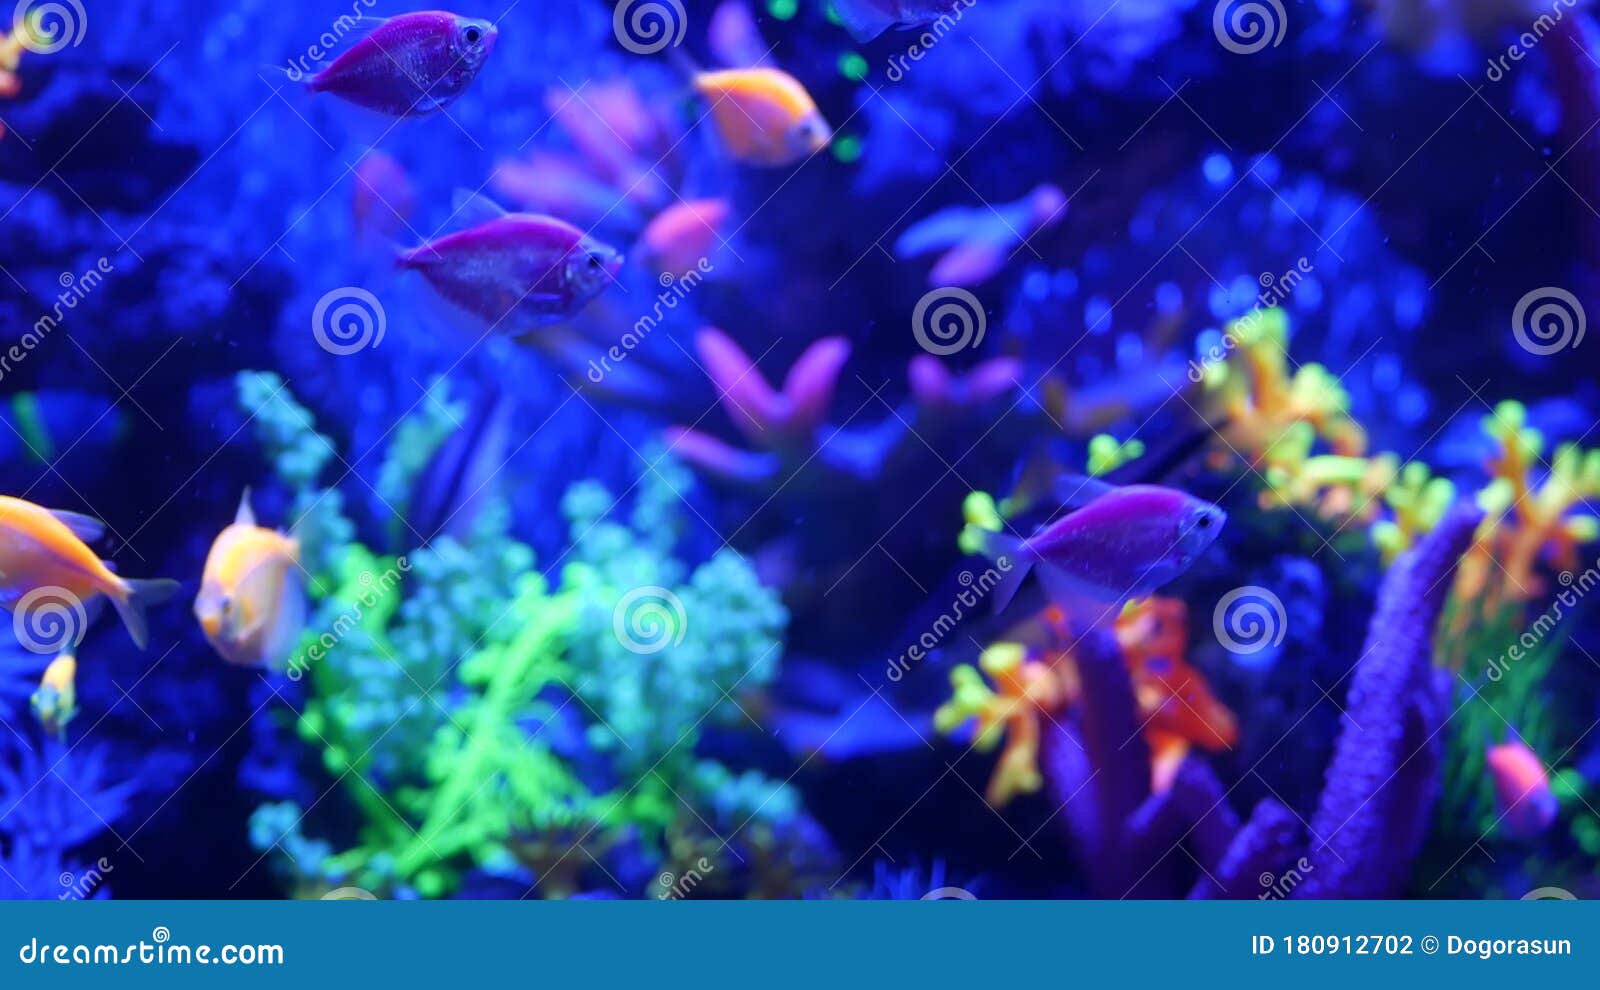 https://thumbs.dreamstime.com/z/les-poissons-color%C3%A9s-vifs-bougie-%C3%A0-l-aquarium-violette-sous-une-lampe-uv-ultraviolet-paradis-tropical-fluorescent-pourpre-180912702.jpg